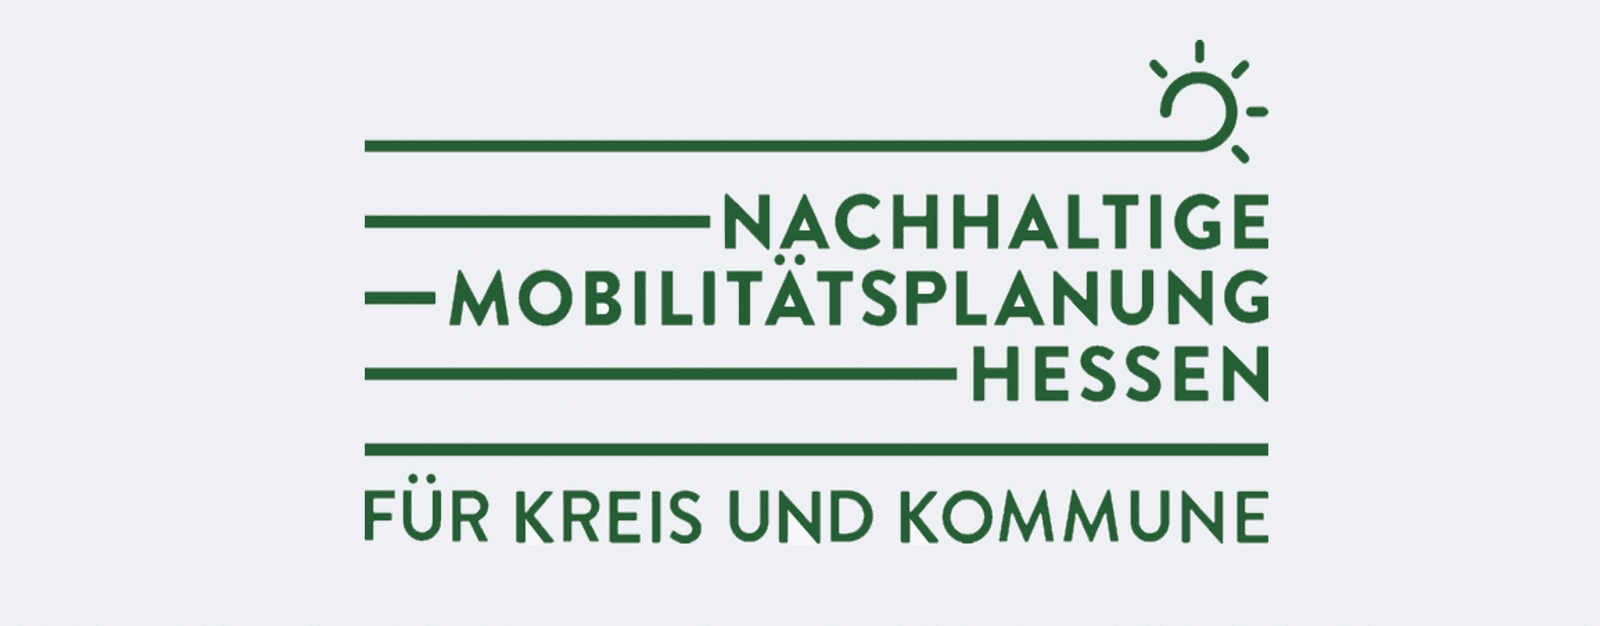 Nachhaltige Mobilitätsplanung Hessen für Kreis und Kommune